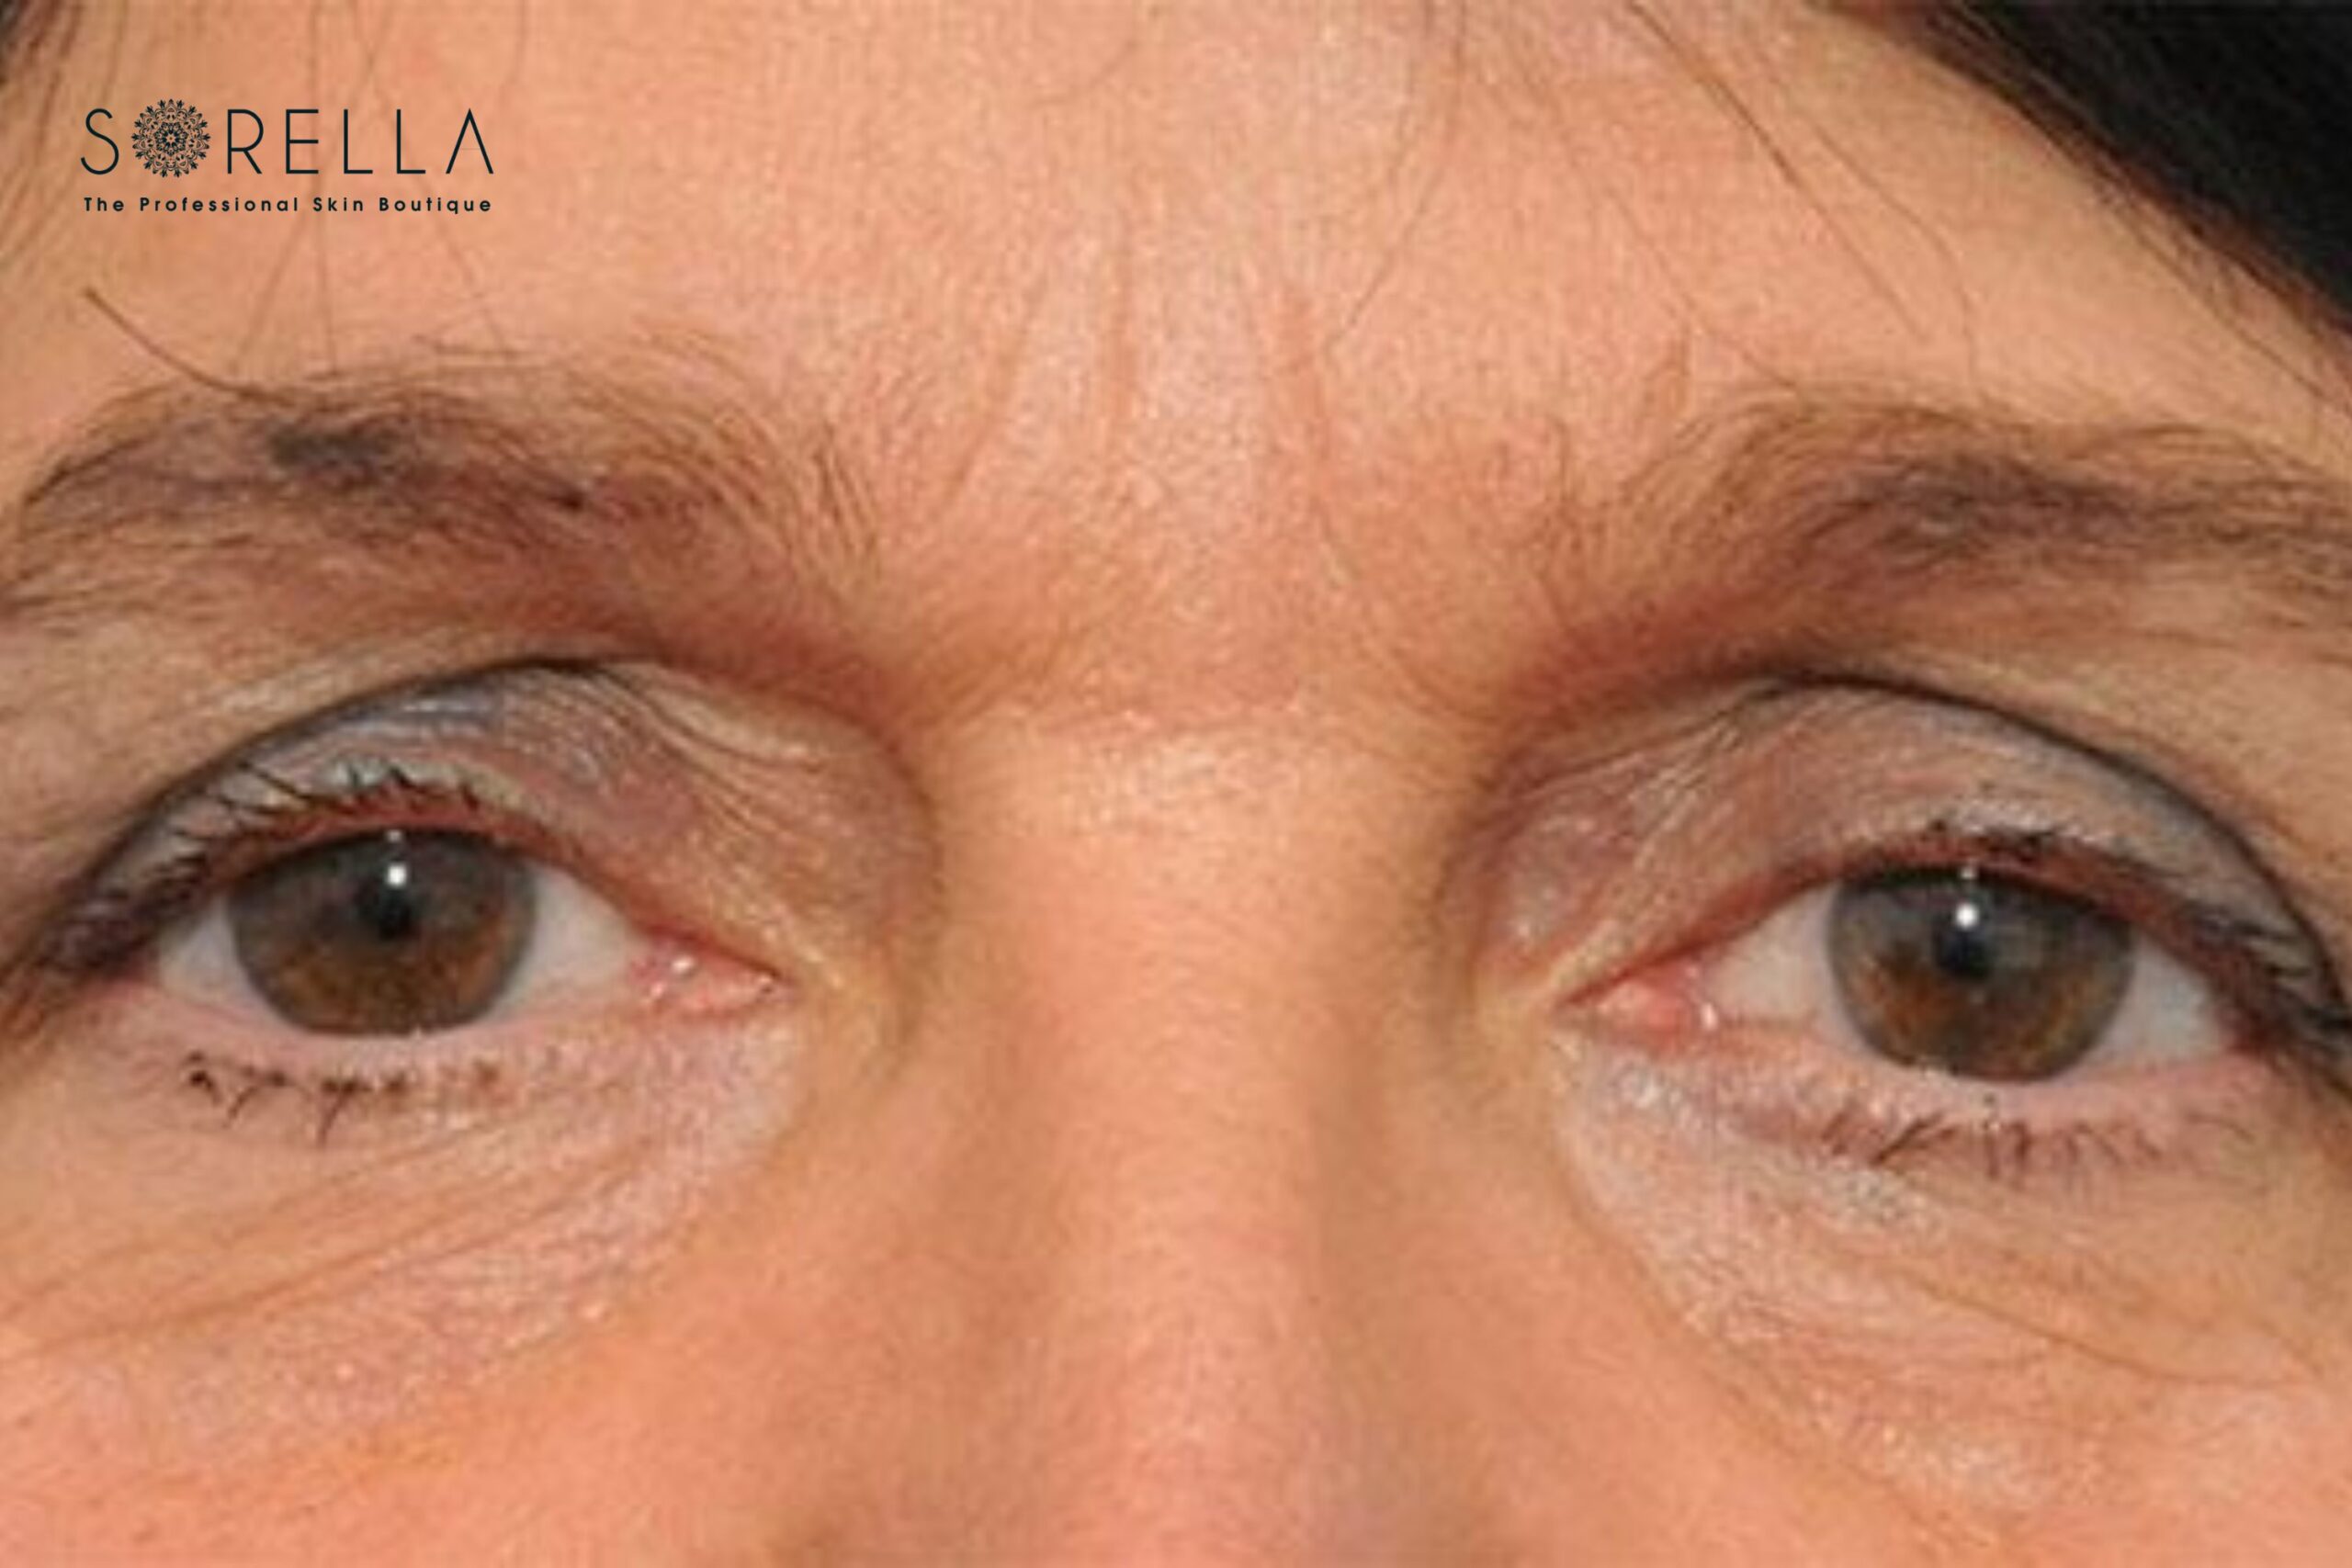 Lão hóa là nguyên nhân khá phổ biến gây ra sụp mí mắt 